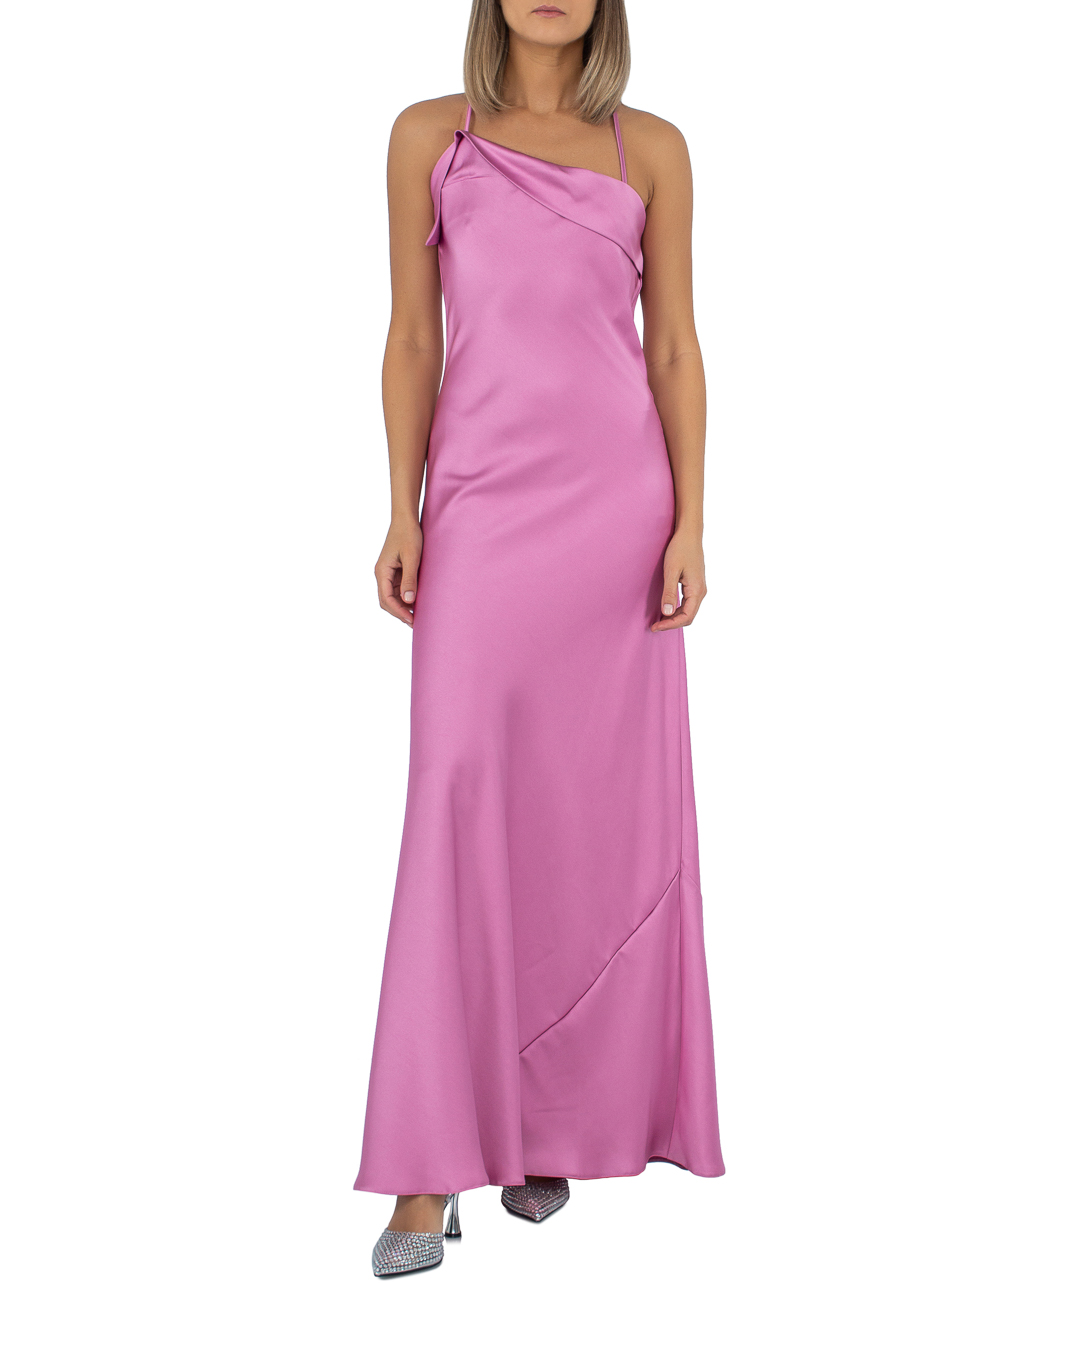 платье ACTUALEE 003843 розовый 42, размер 42 - фото 2